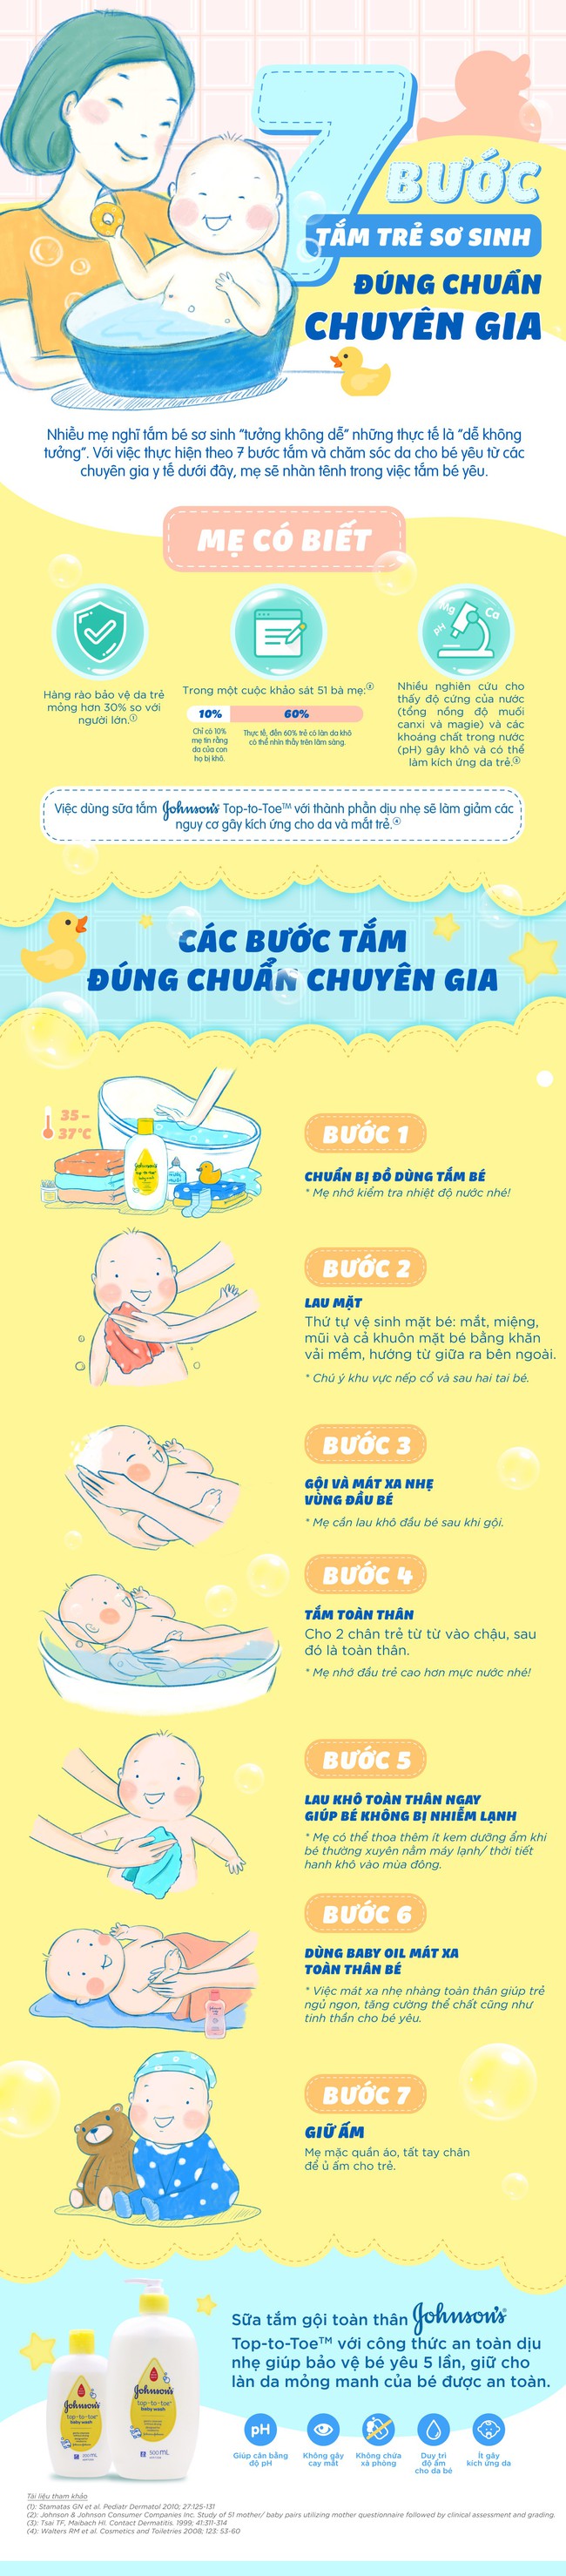 7 bước tắm trẻ sơ sinh đúng chuẩn chuyên gia - Ảnh 1.